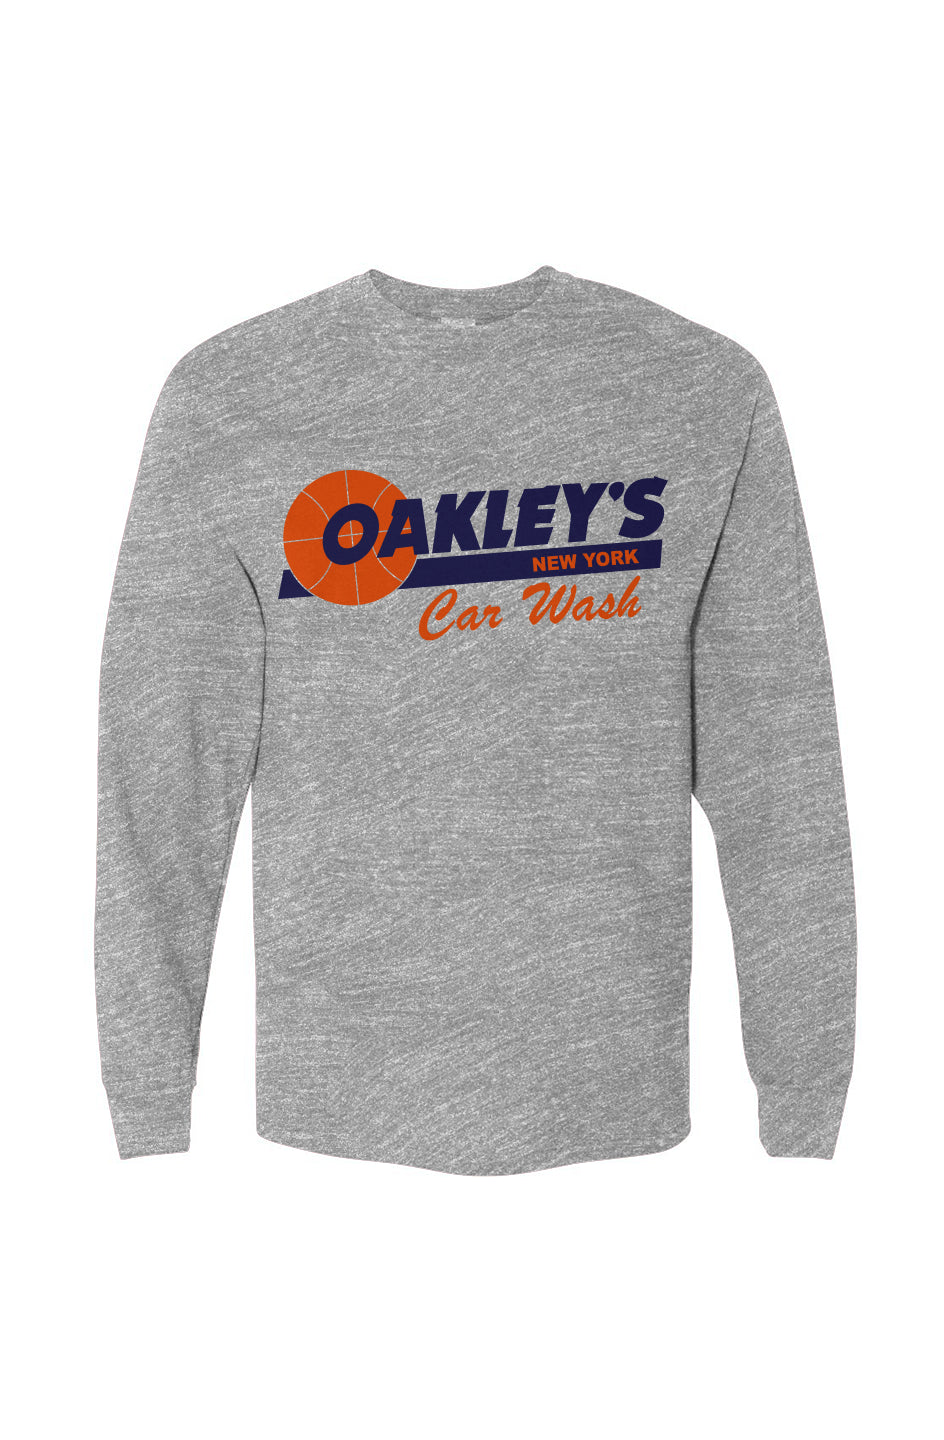 Oakley's Car Wash Long Sleeve in Gray